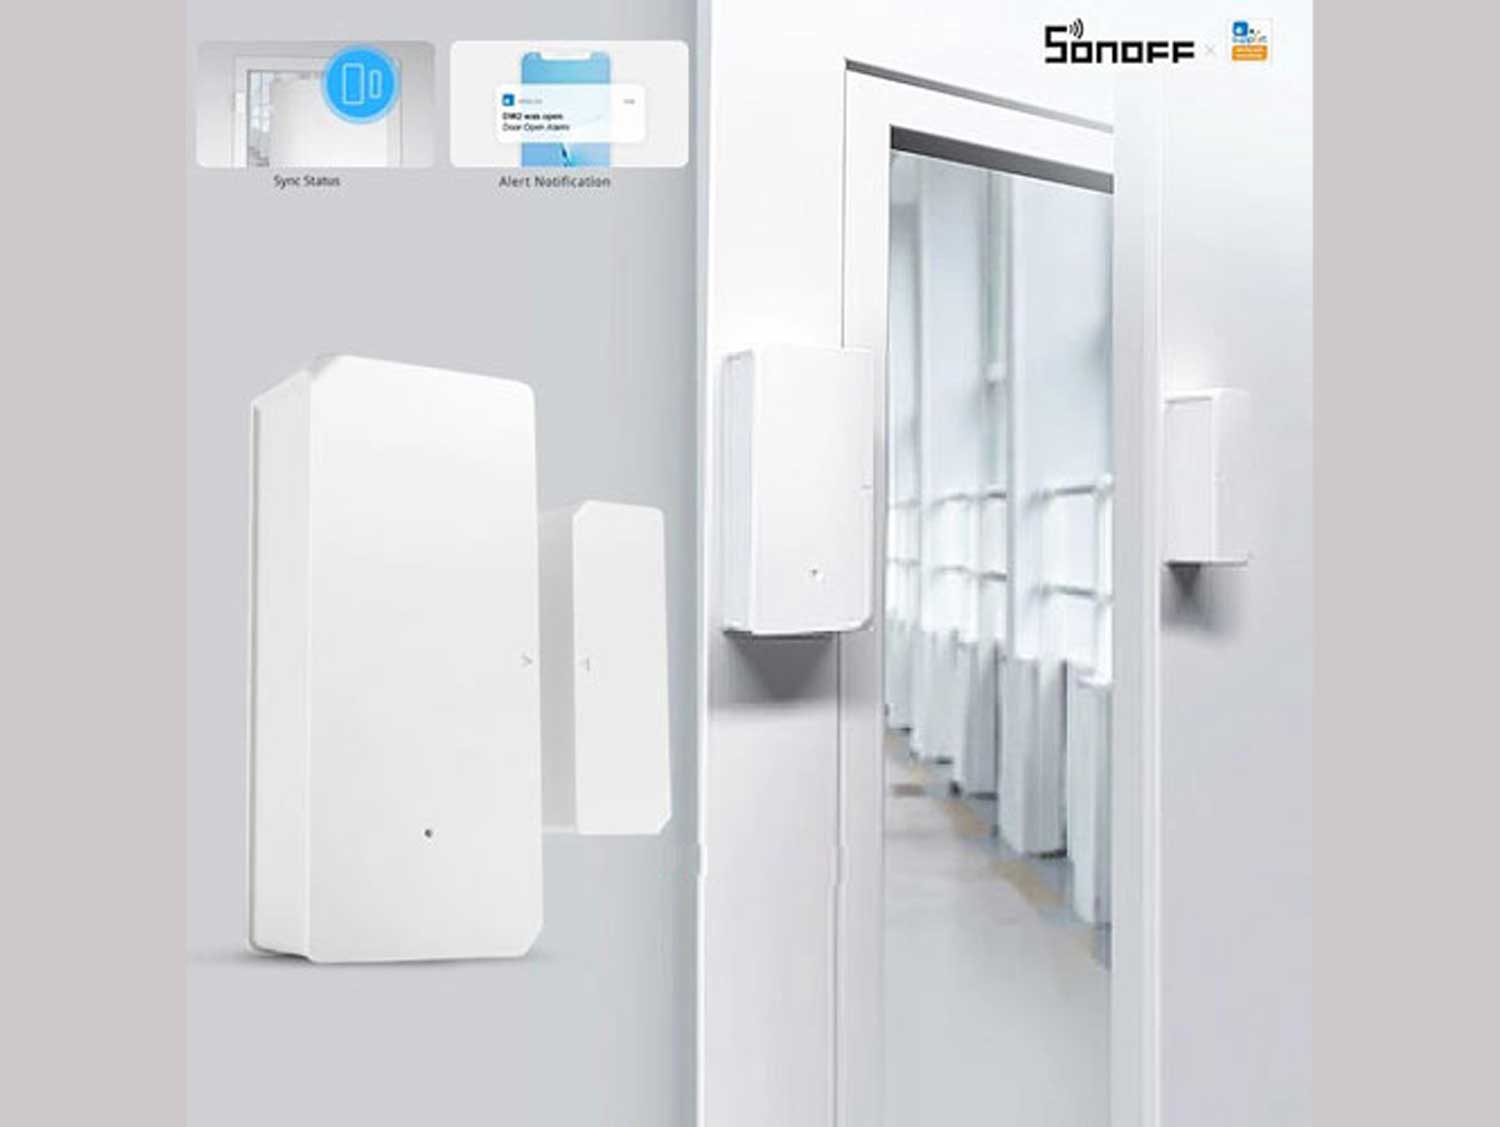 SONOFF DW2 Wifi Wireless Door Window Sensor Smart Home Security System